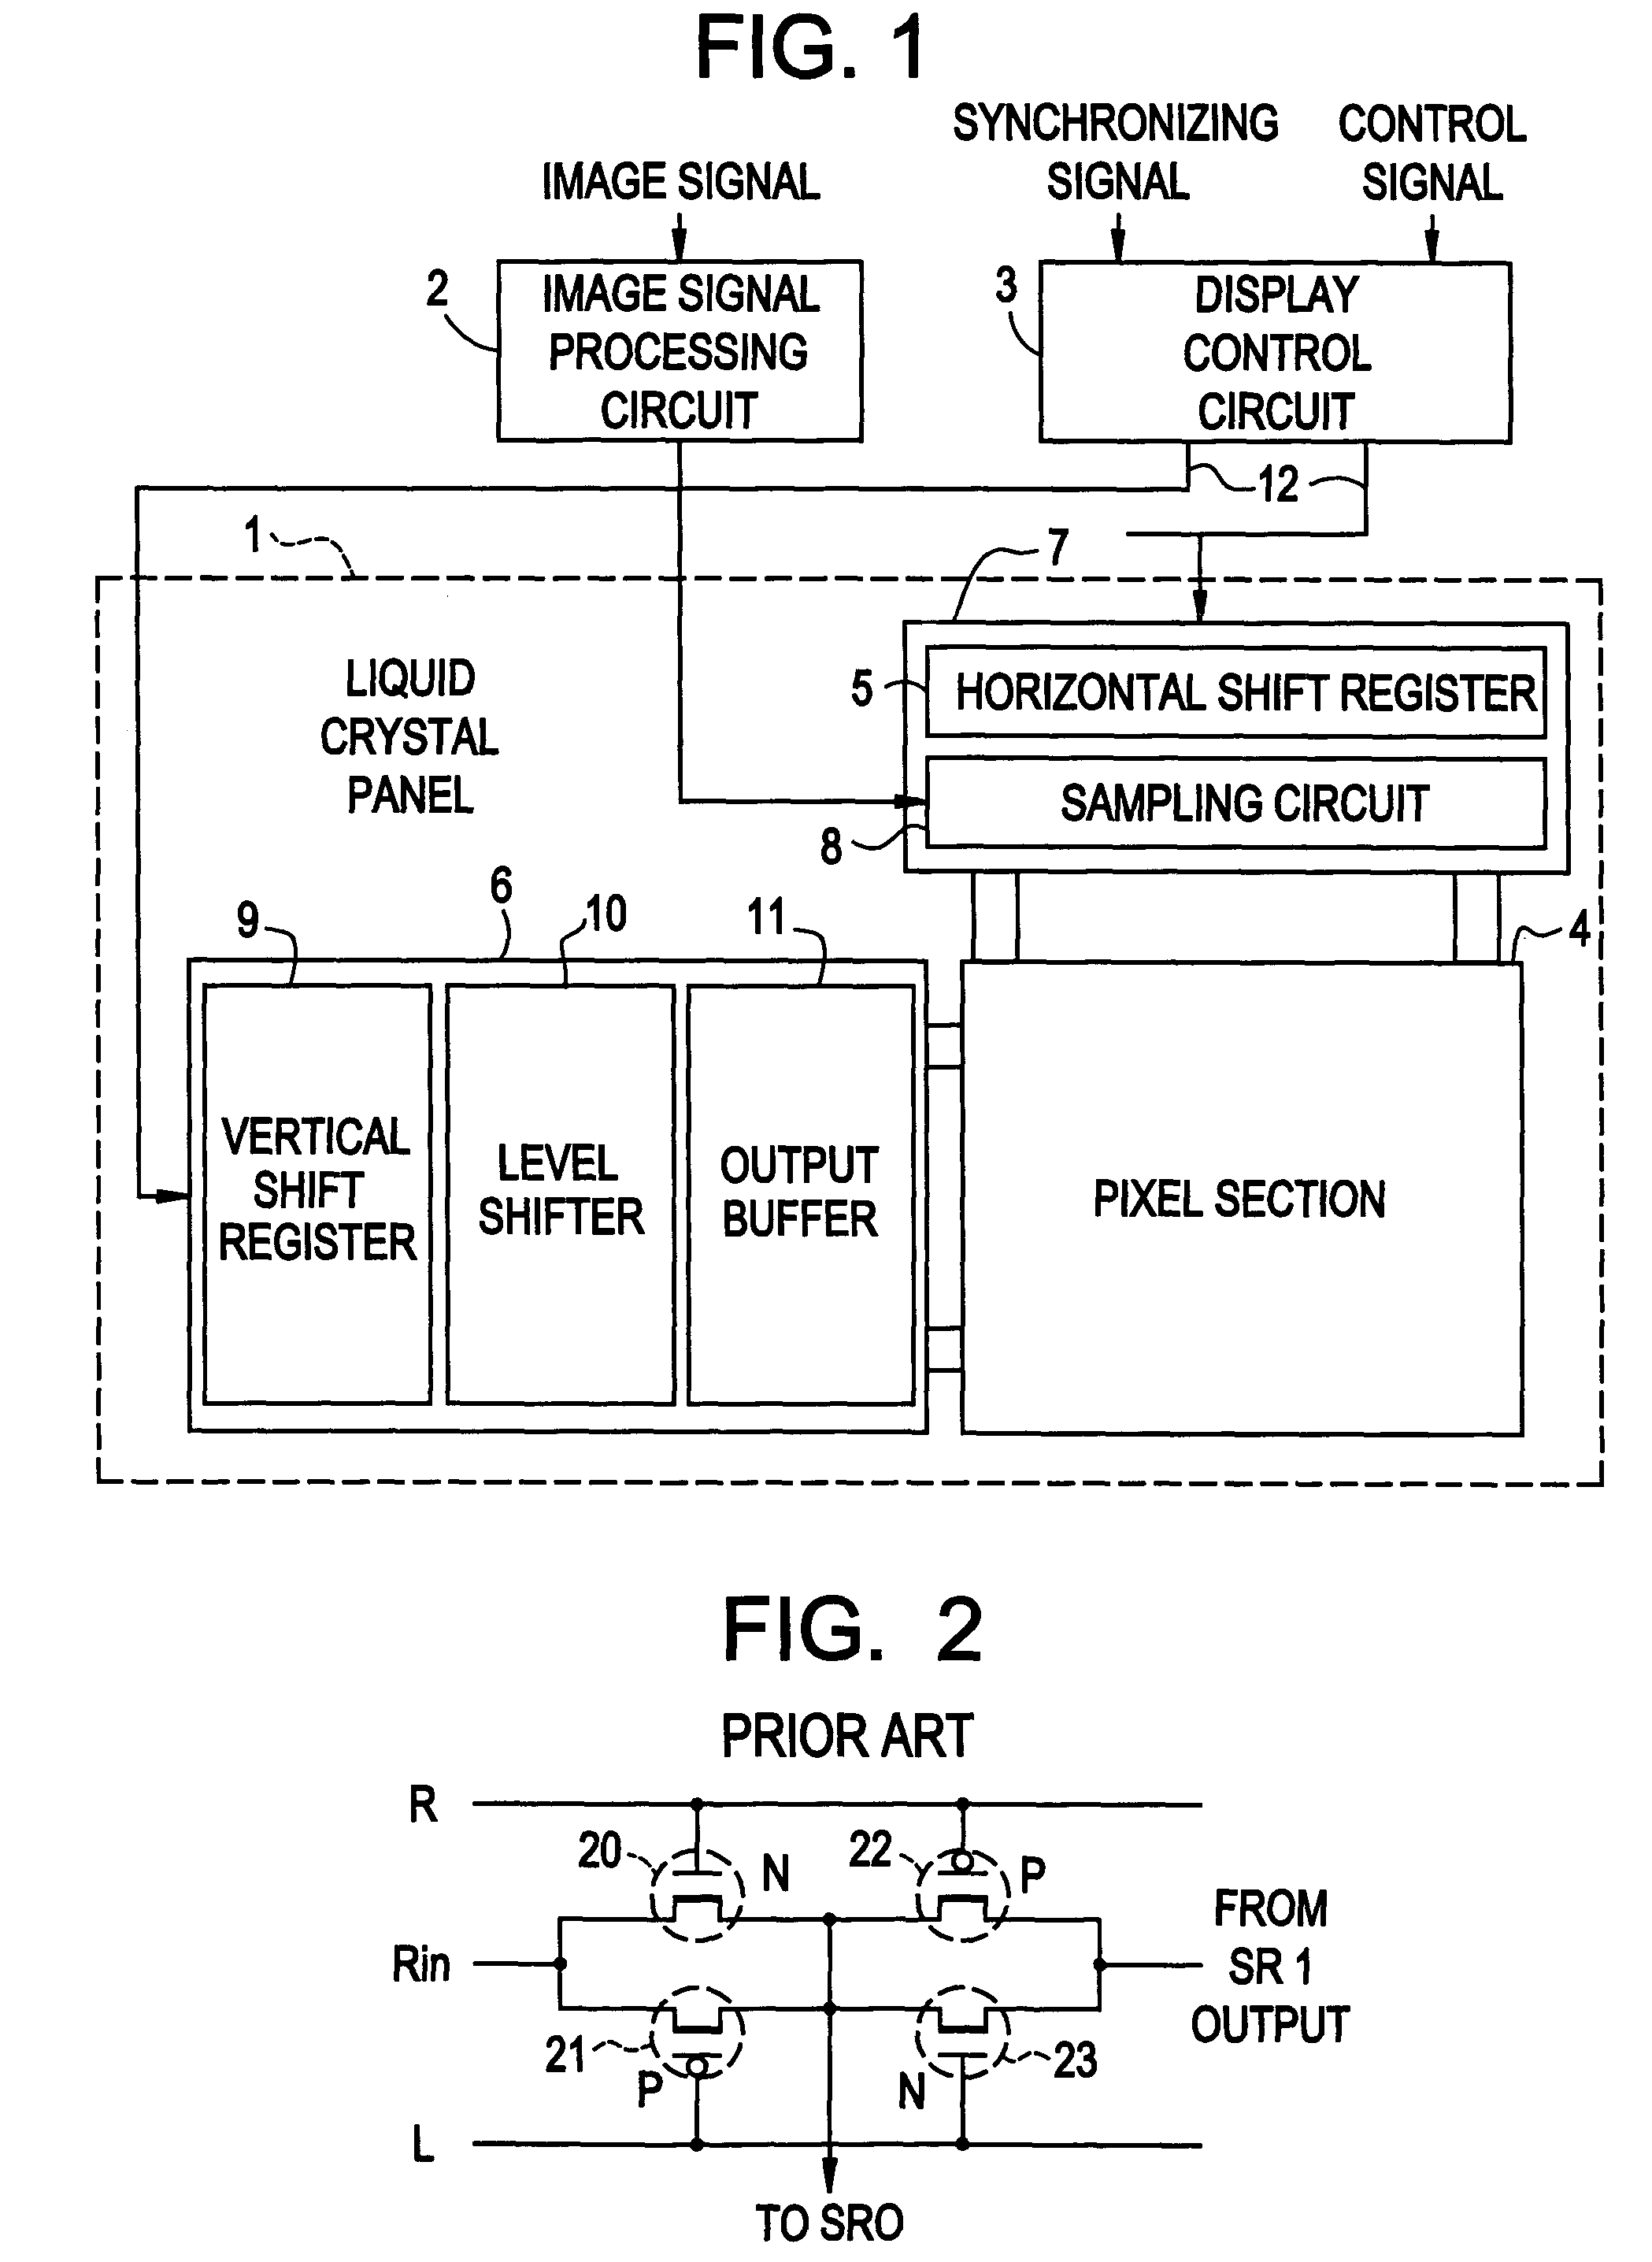 Display panel drive circuit and display panel